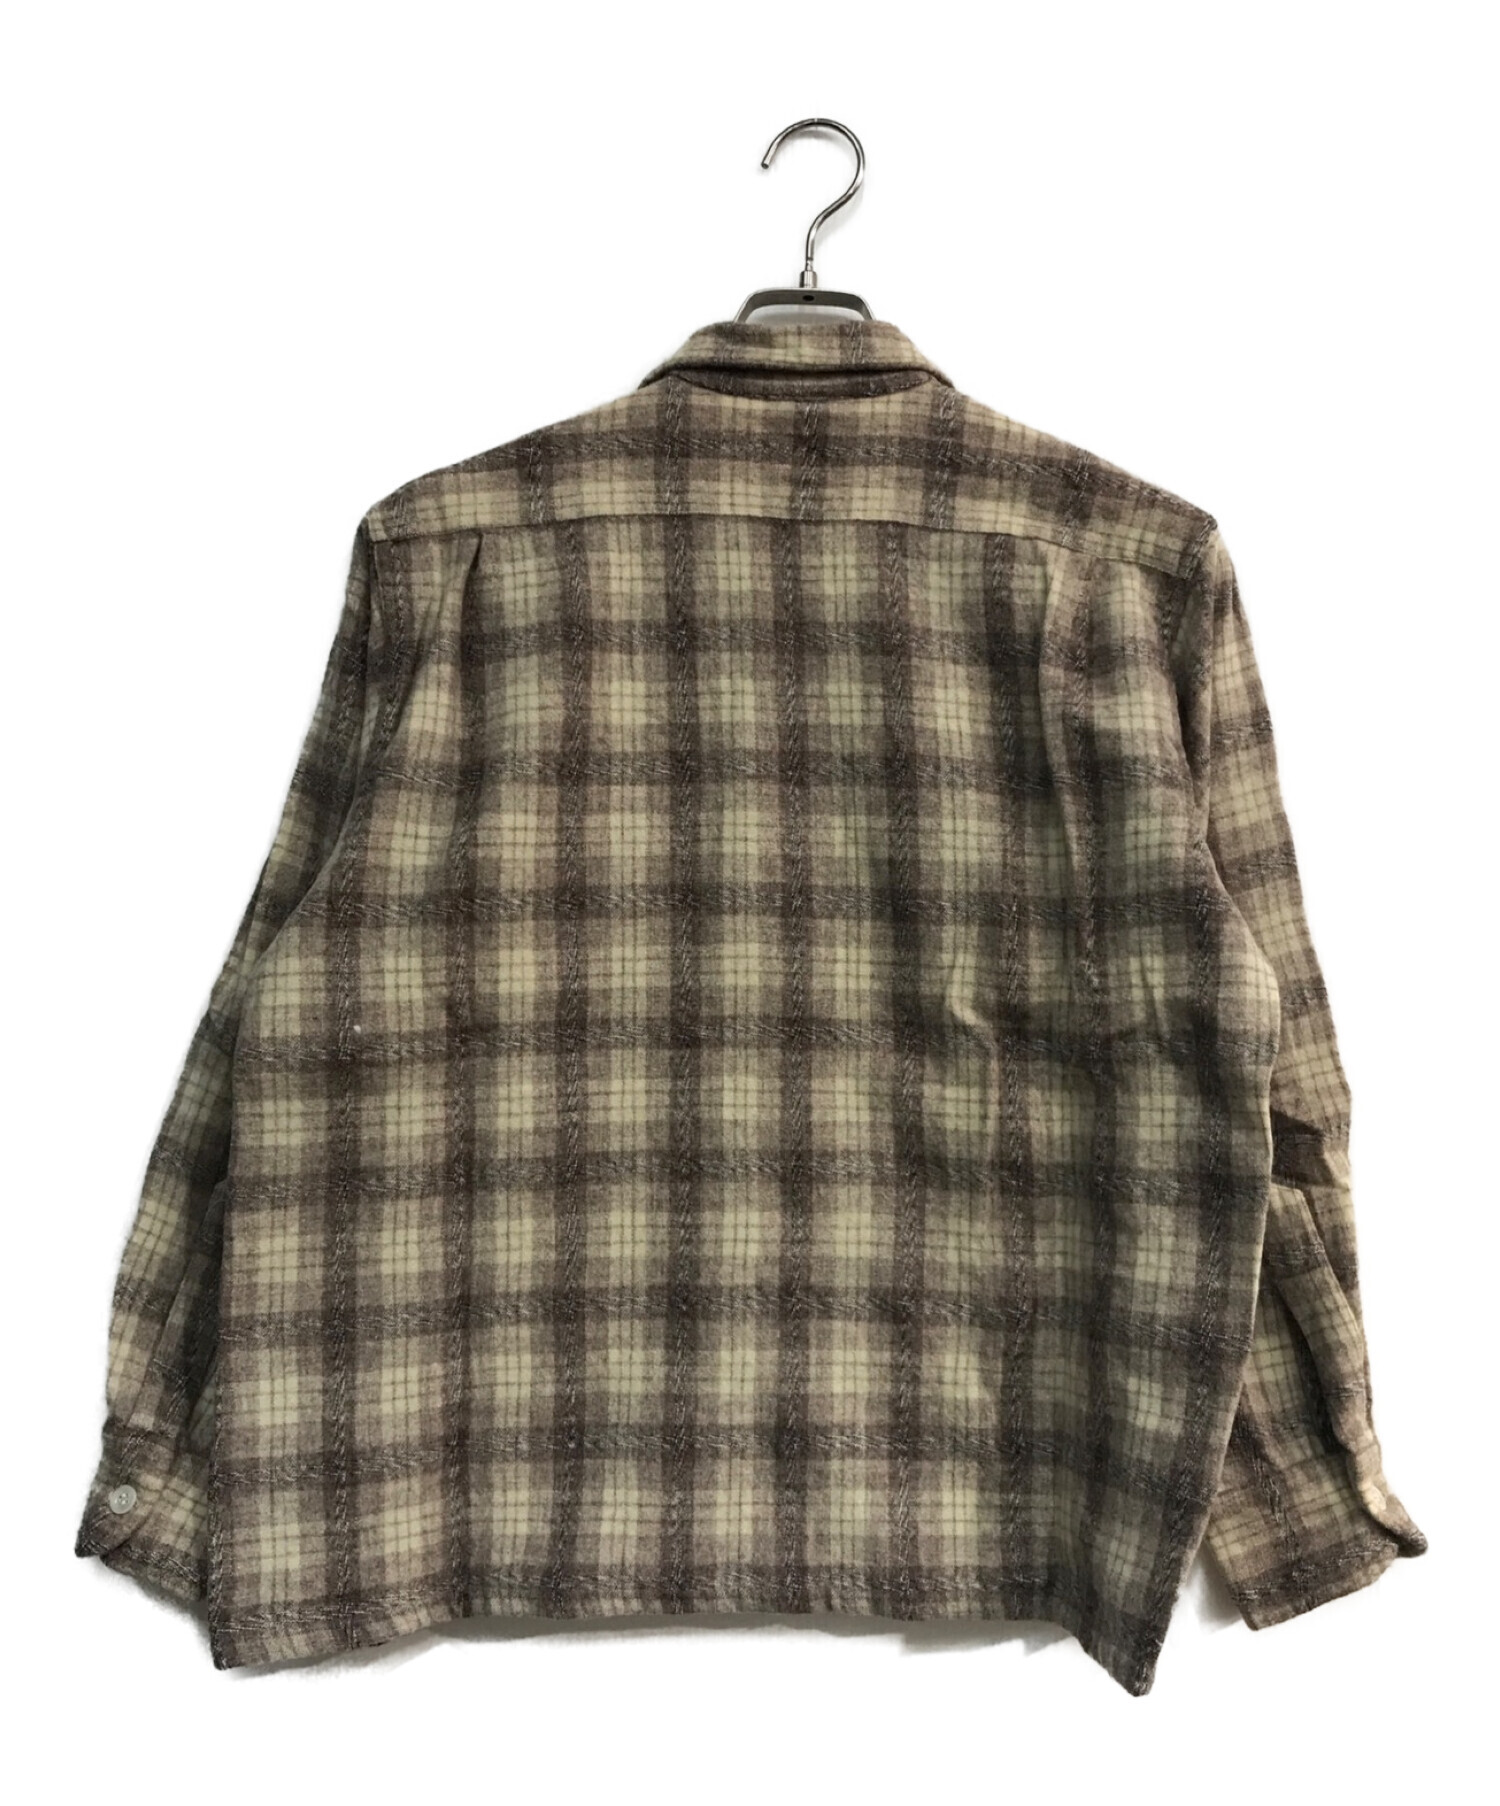 6,900円50's Levi's オープンカラーシャツ